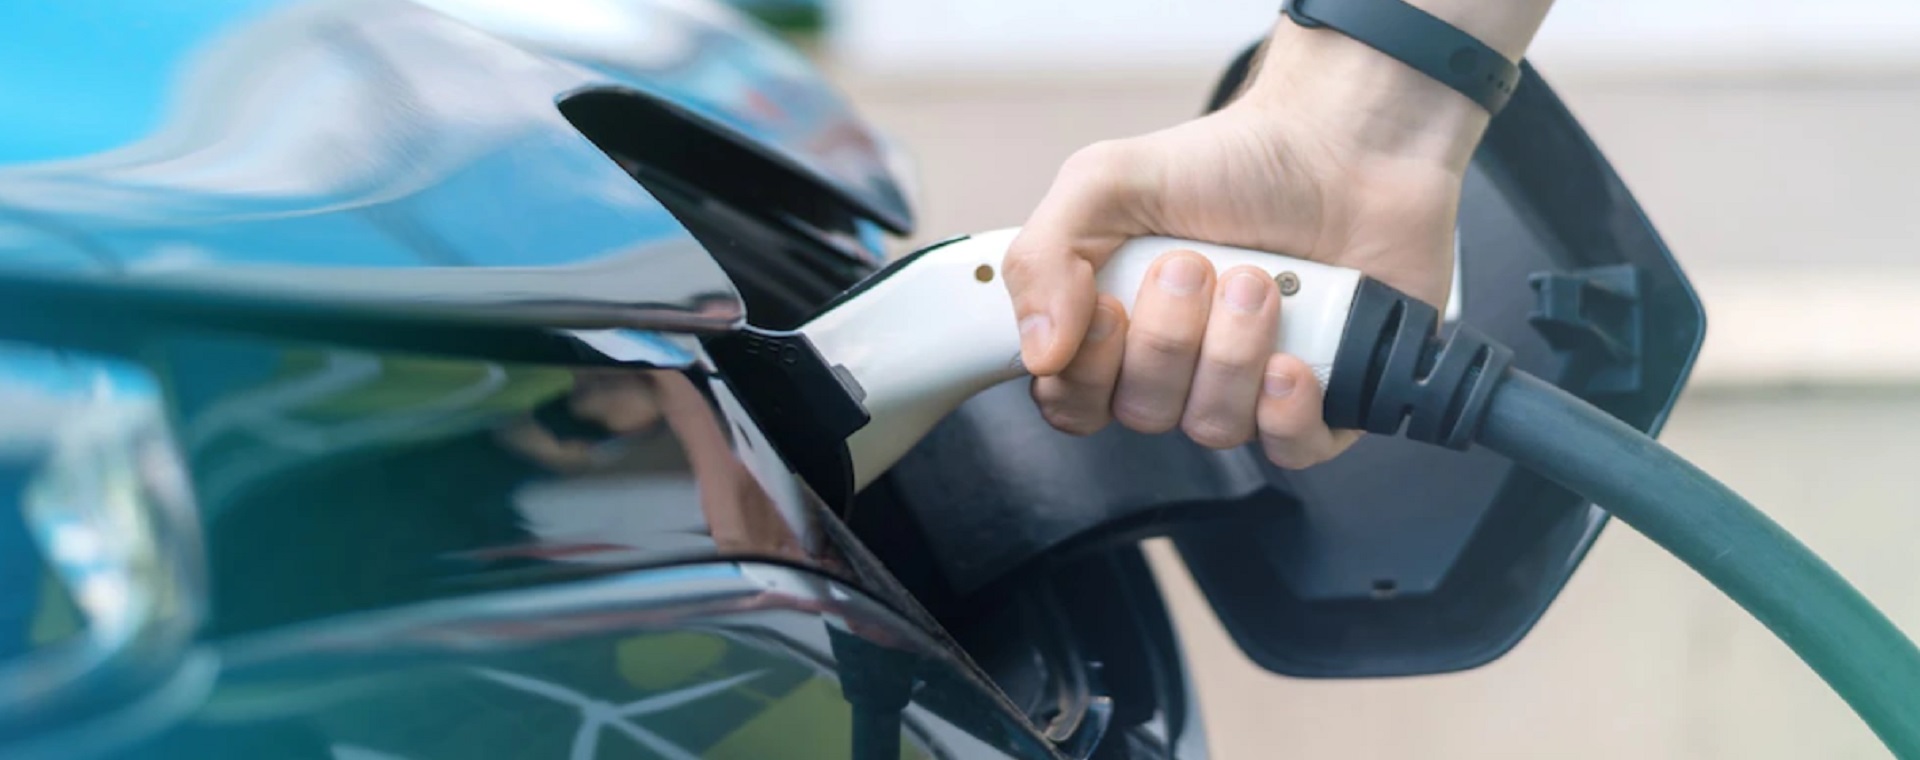 Ilustrasi pengguna sedang mengisi baterai mobil listrik./ Dok. Freepik. Dominasi Mobil Jepang Kian Terancam oleh China